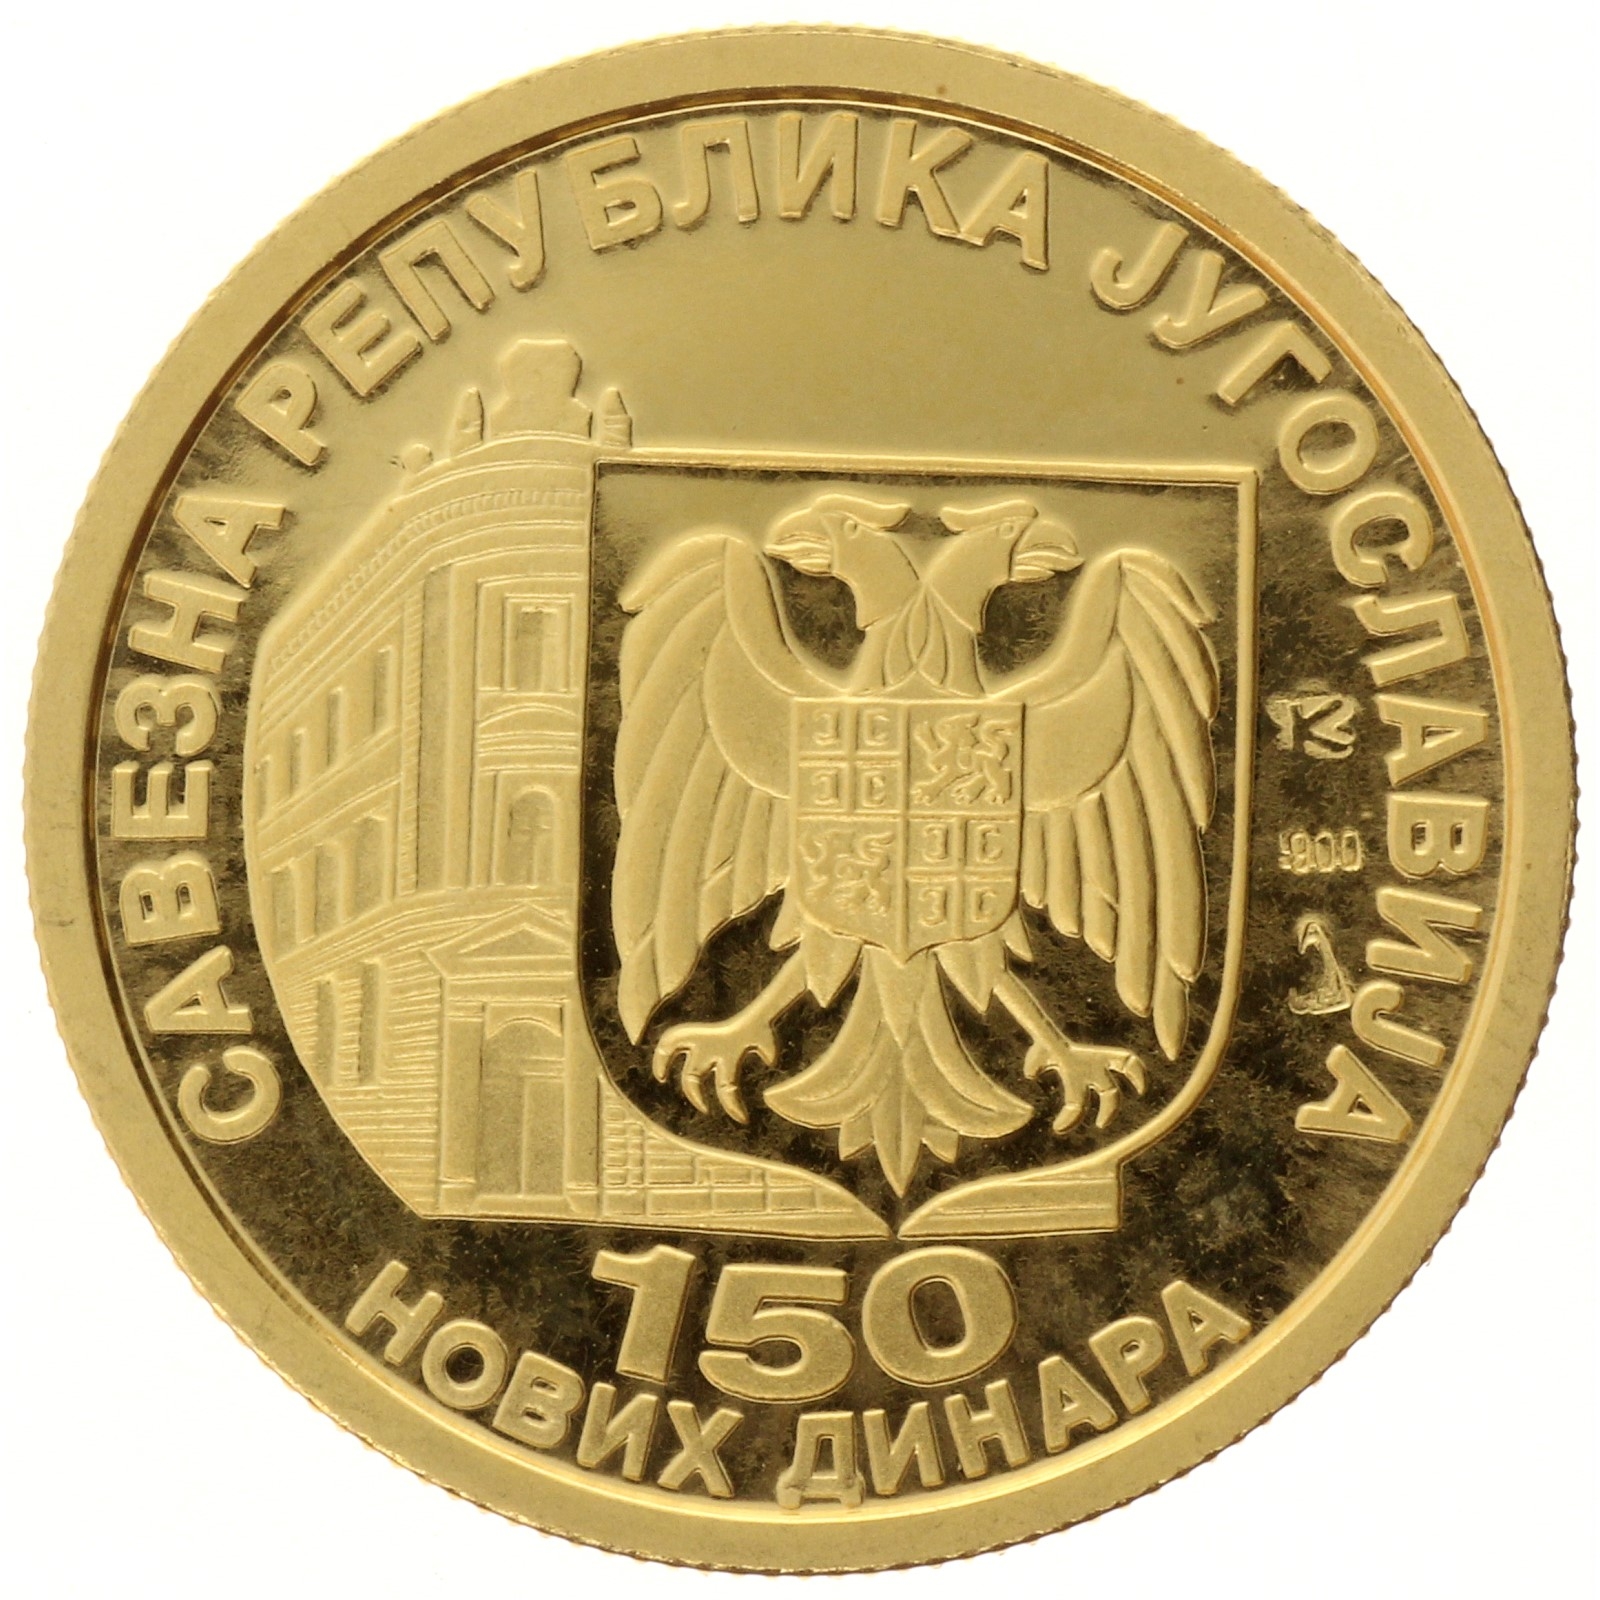 Yugoslavia - 150 dinara - 1994 - National Bank